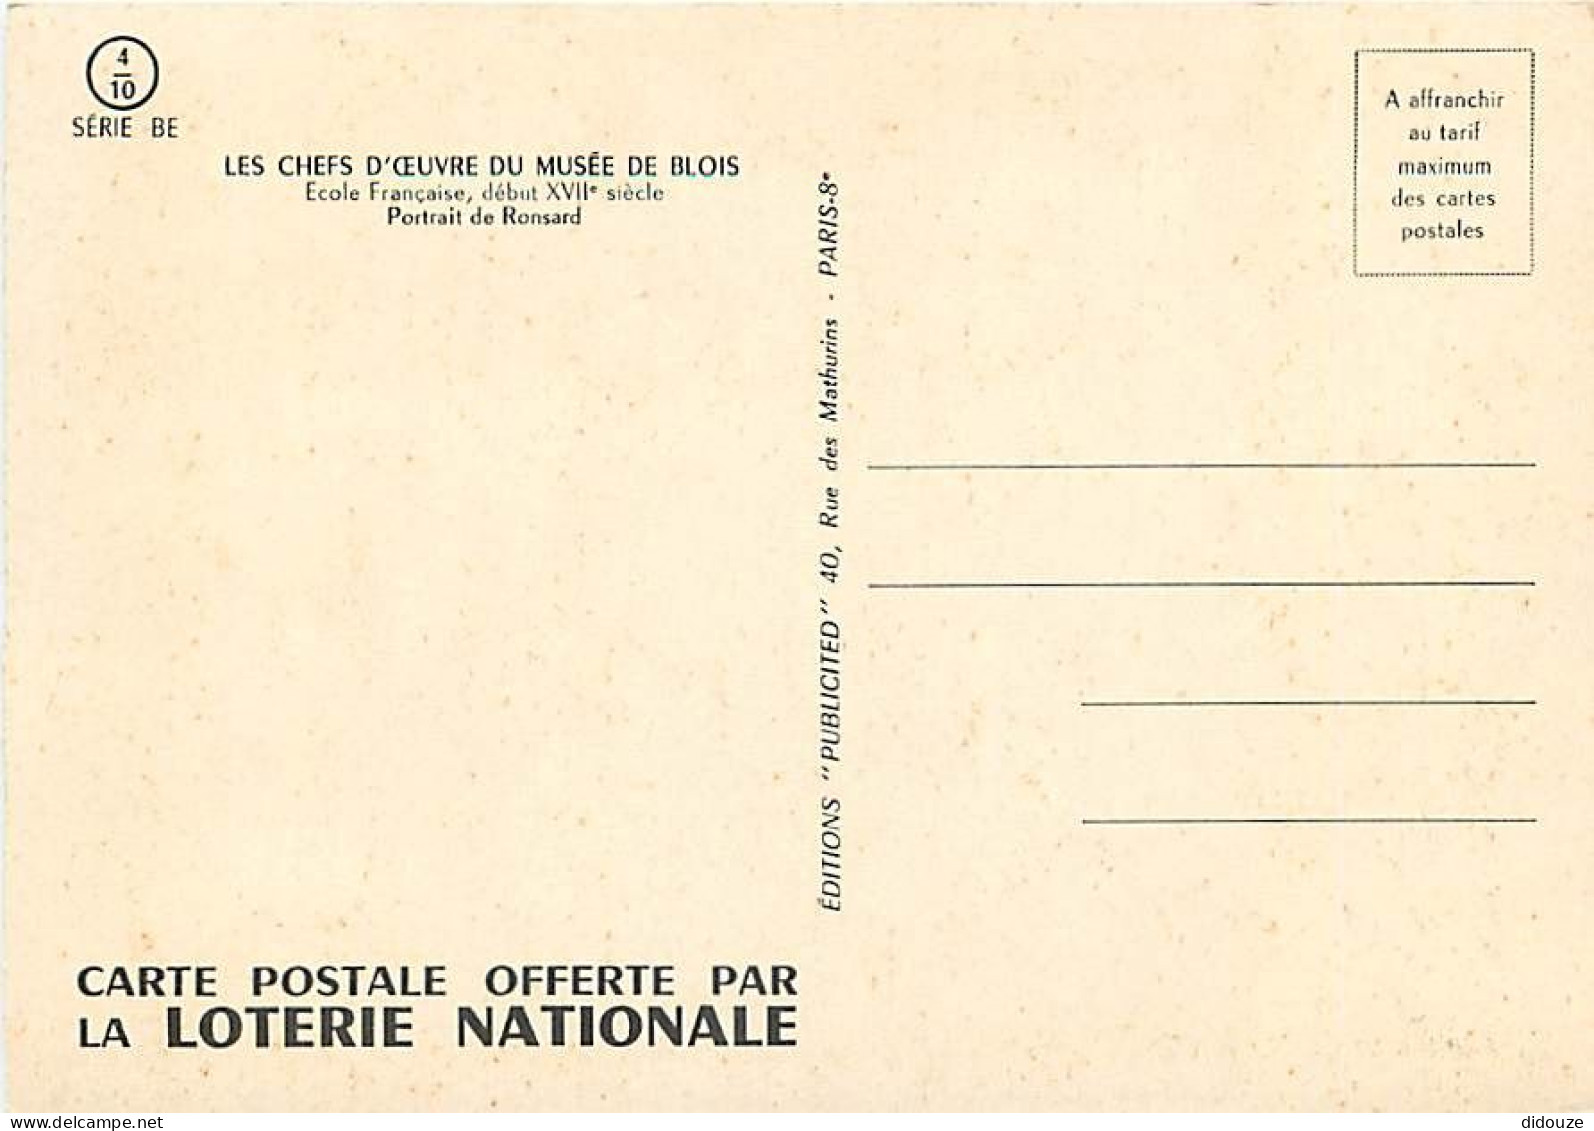 Art - Peinture - Histoire - Ecole Française - Portrait De Ronsard - Carte De La Loterie Nationale - Carte Neuve - CPM -  - Histoire